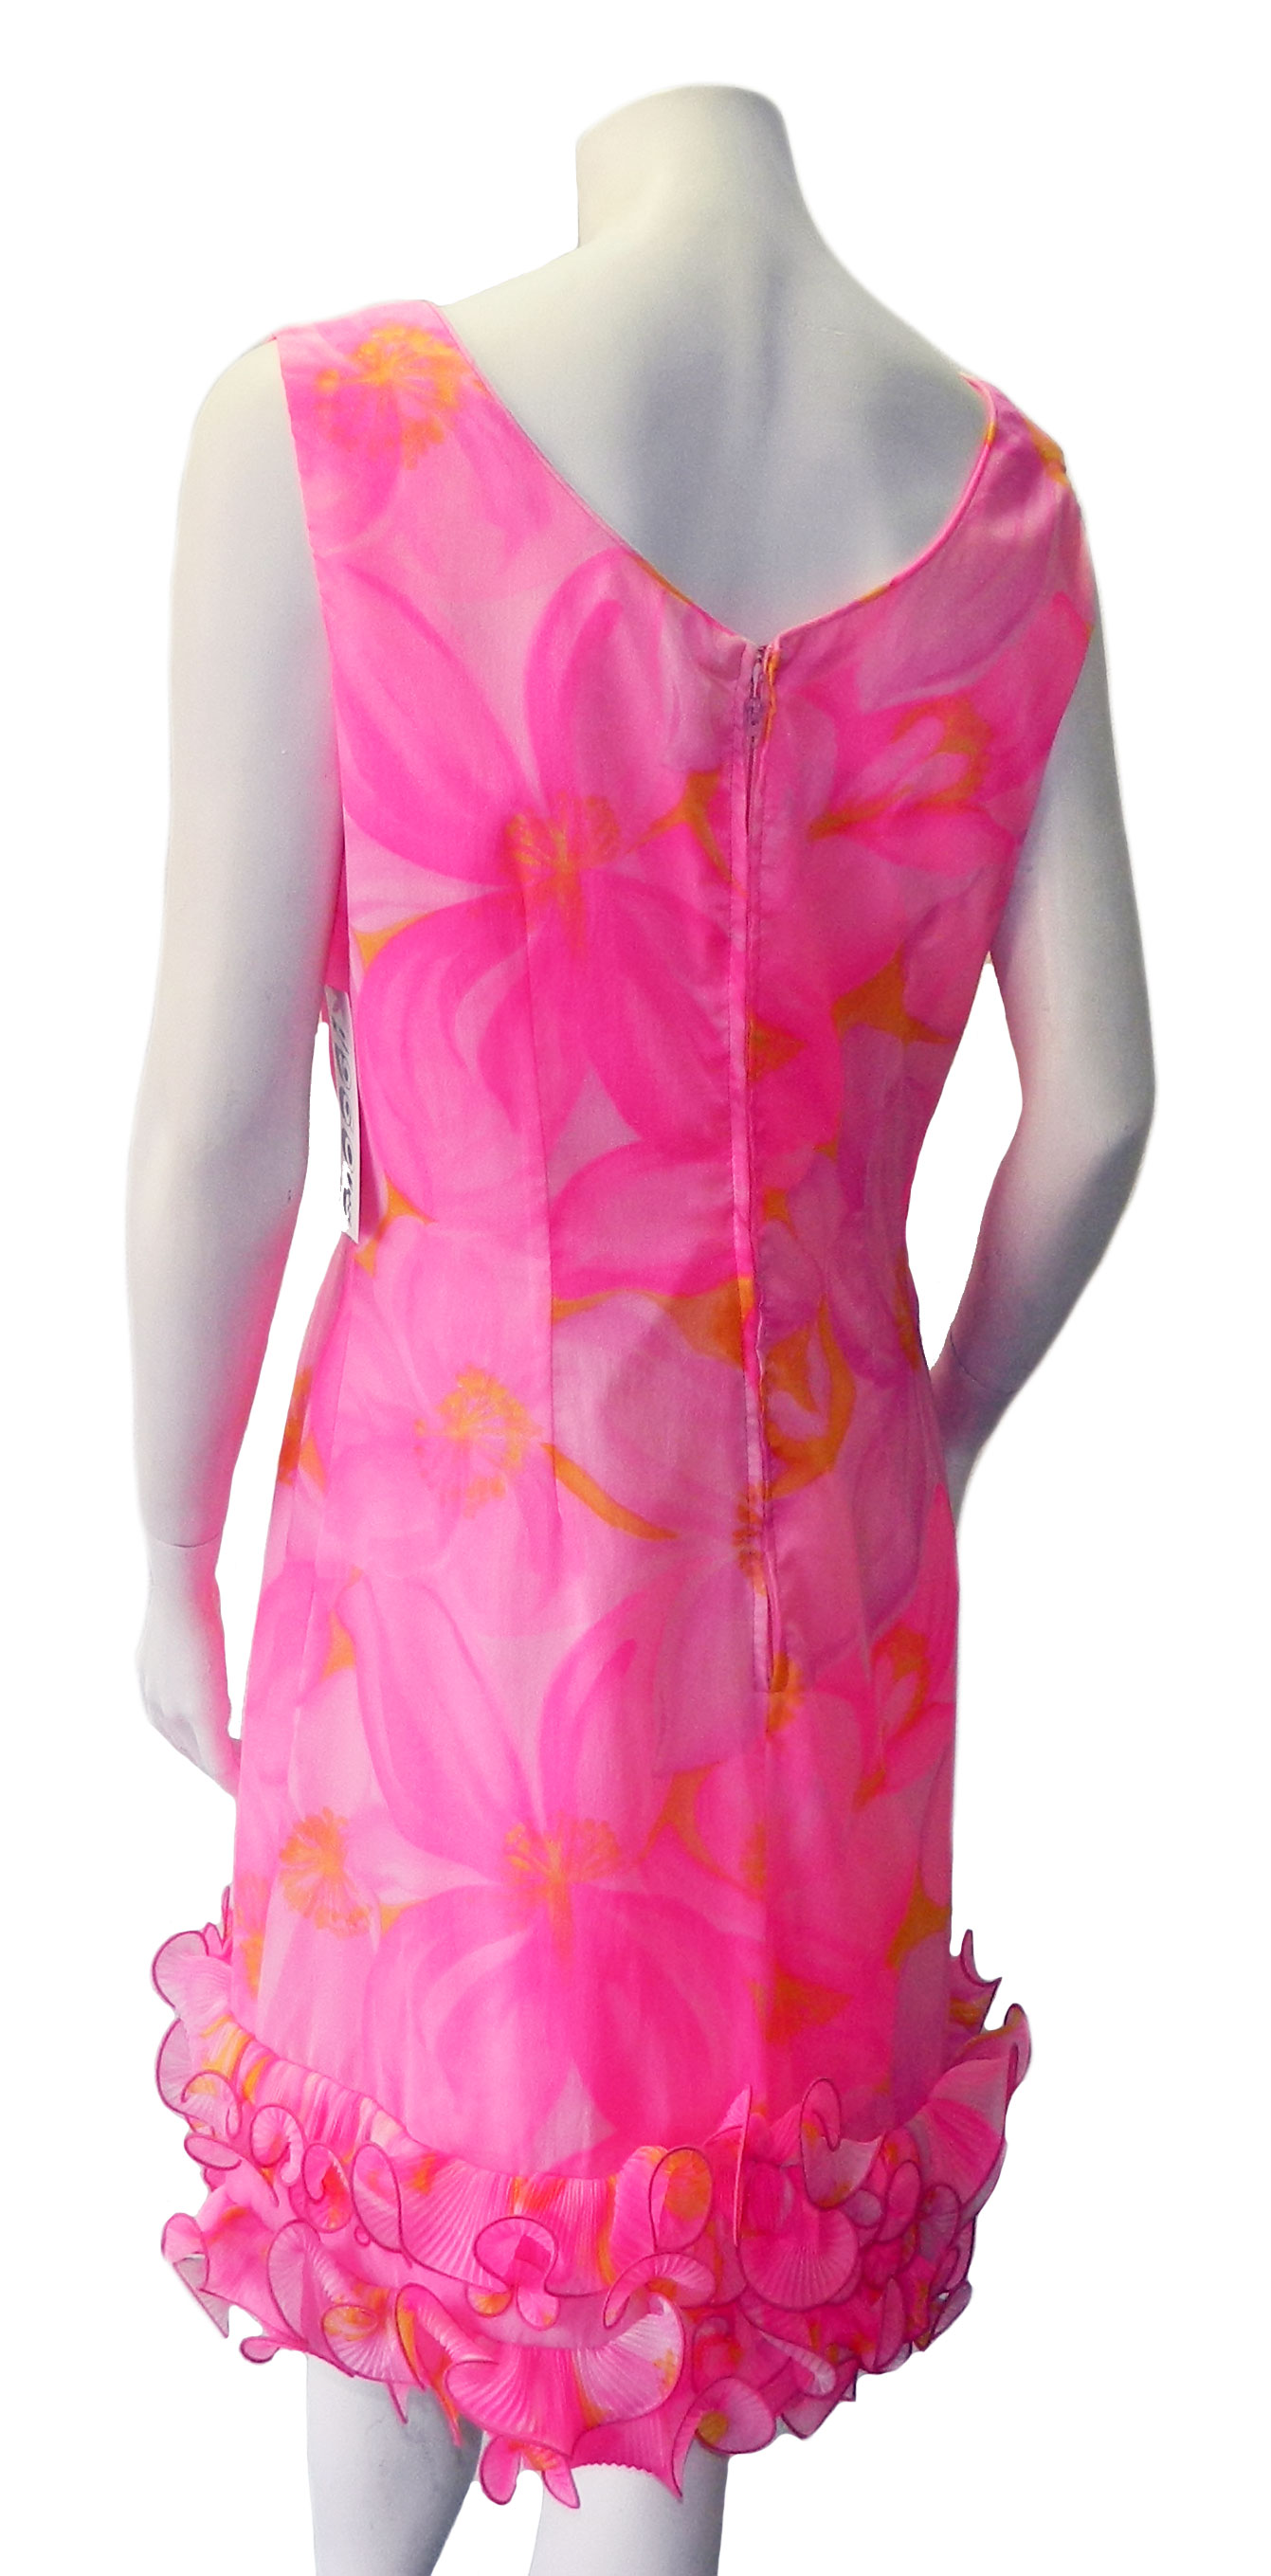 1960's Hawaiian dress